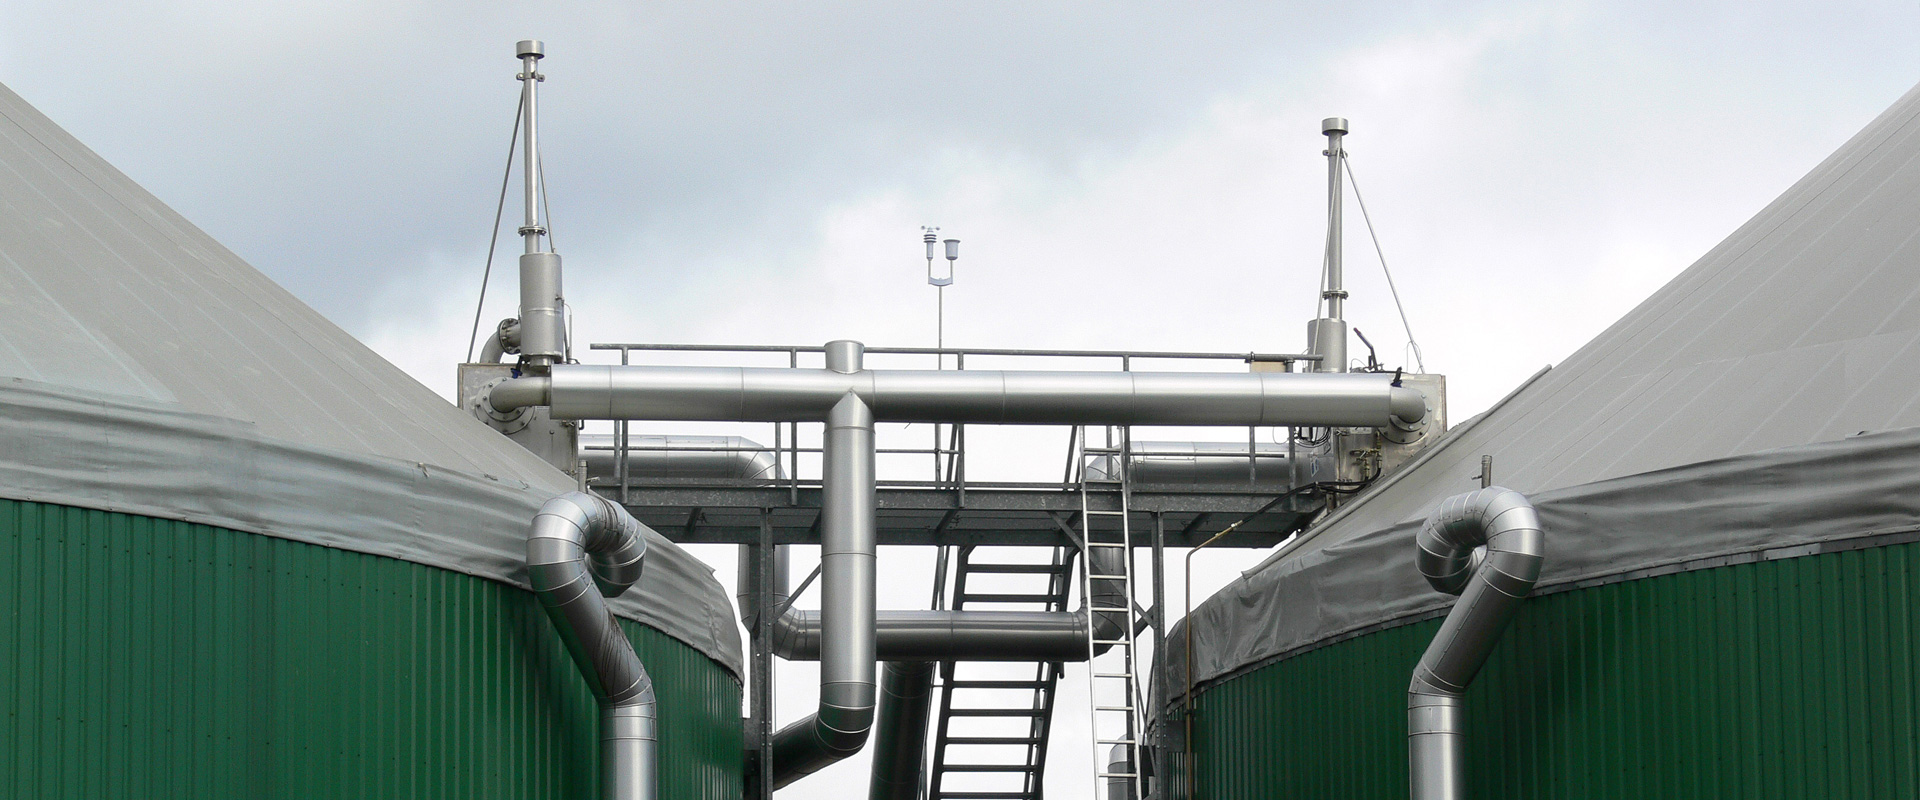 EO. Schweißen - Rohrleitungsbau, Biogasanlagen und Kläranlagenbau sowie Klimaverrohrungen